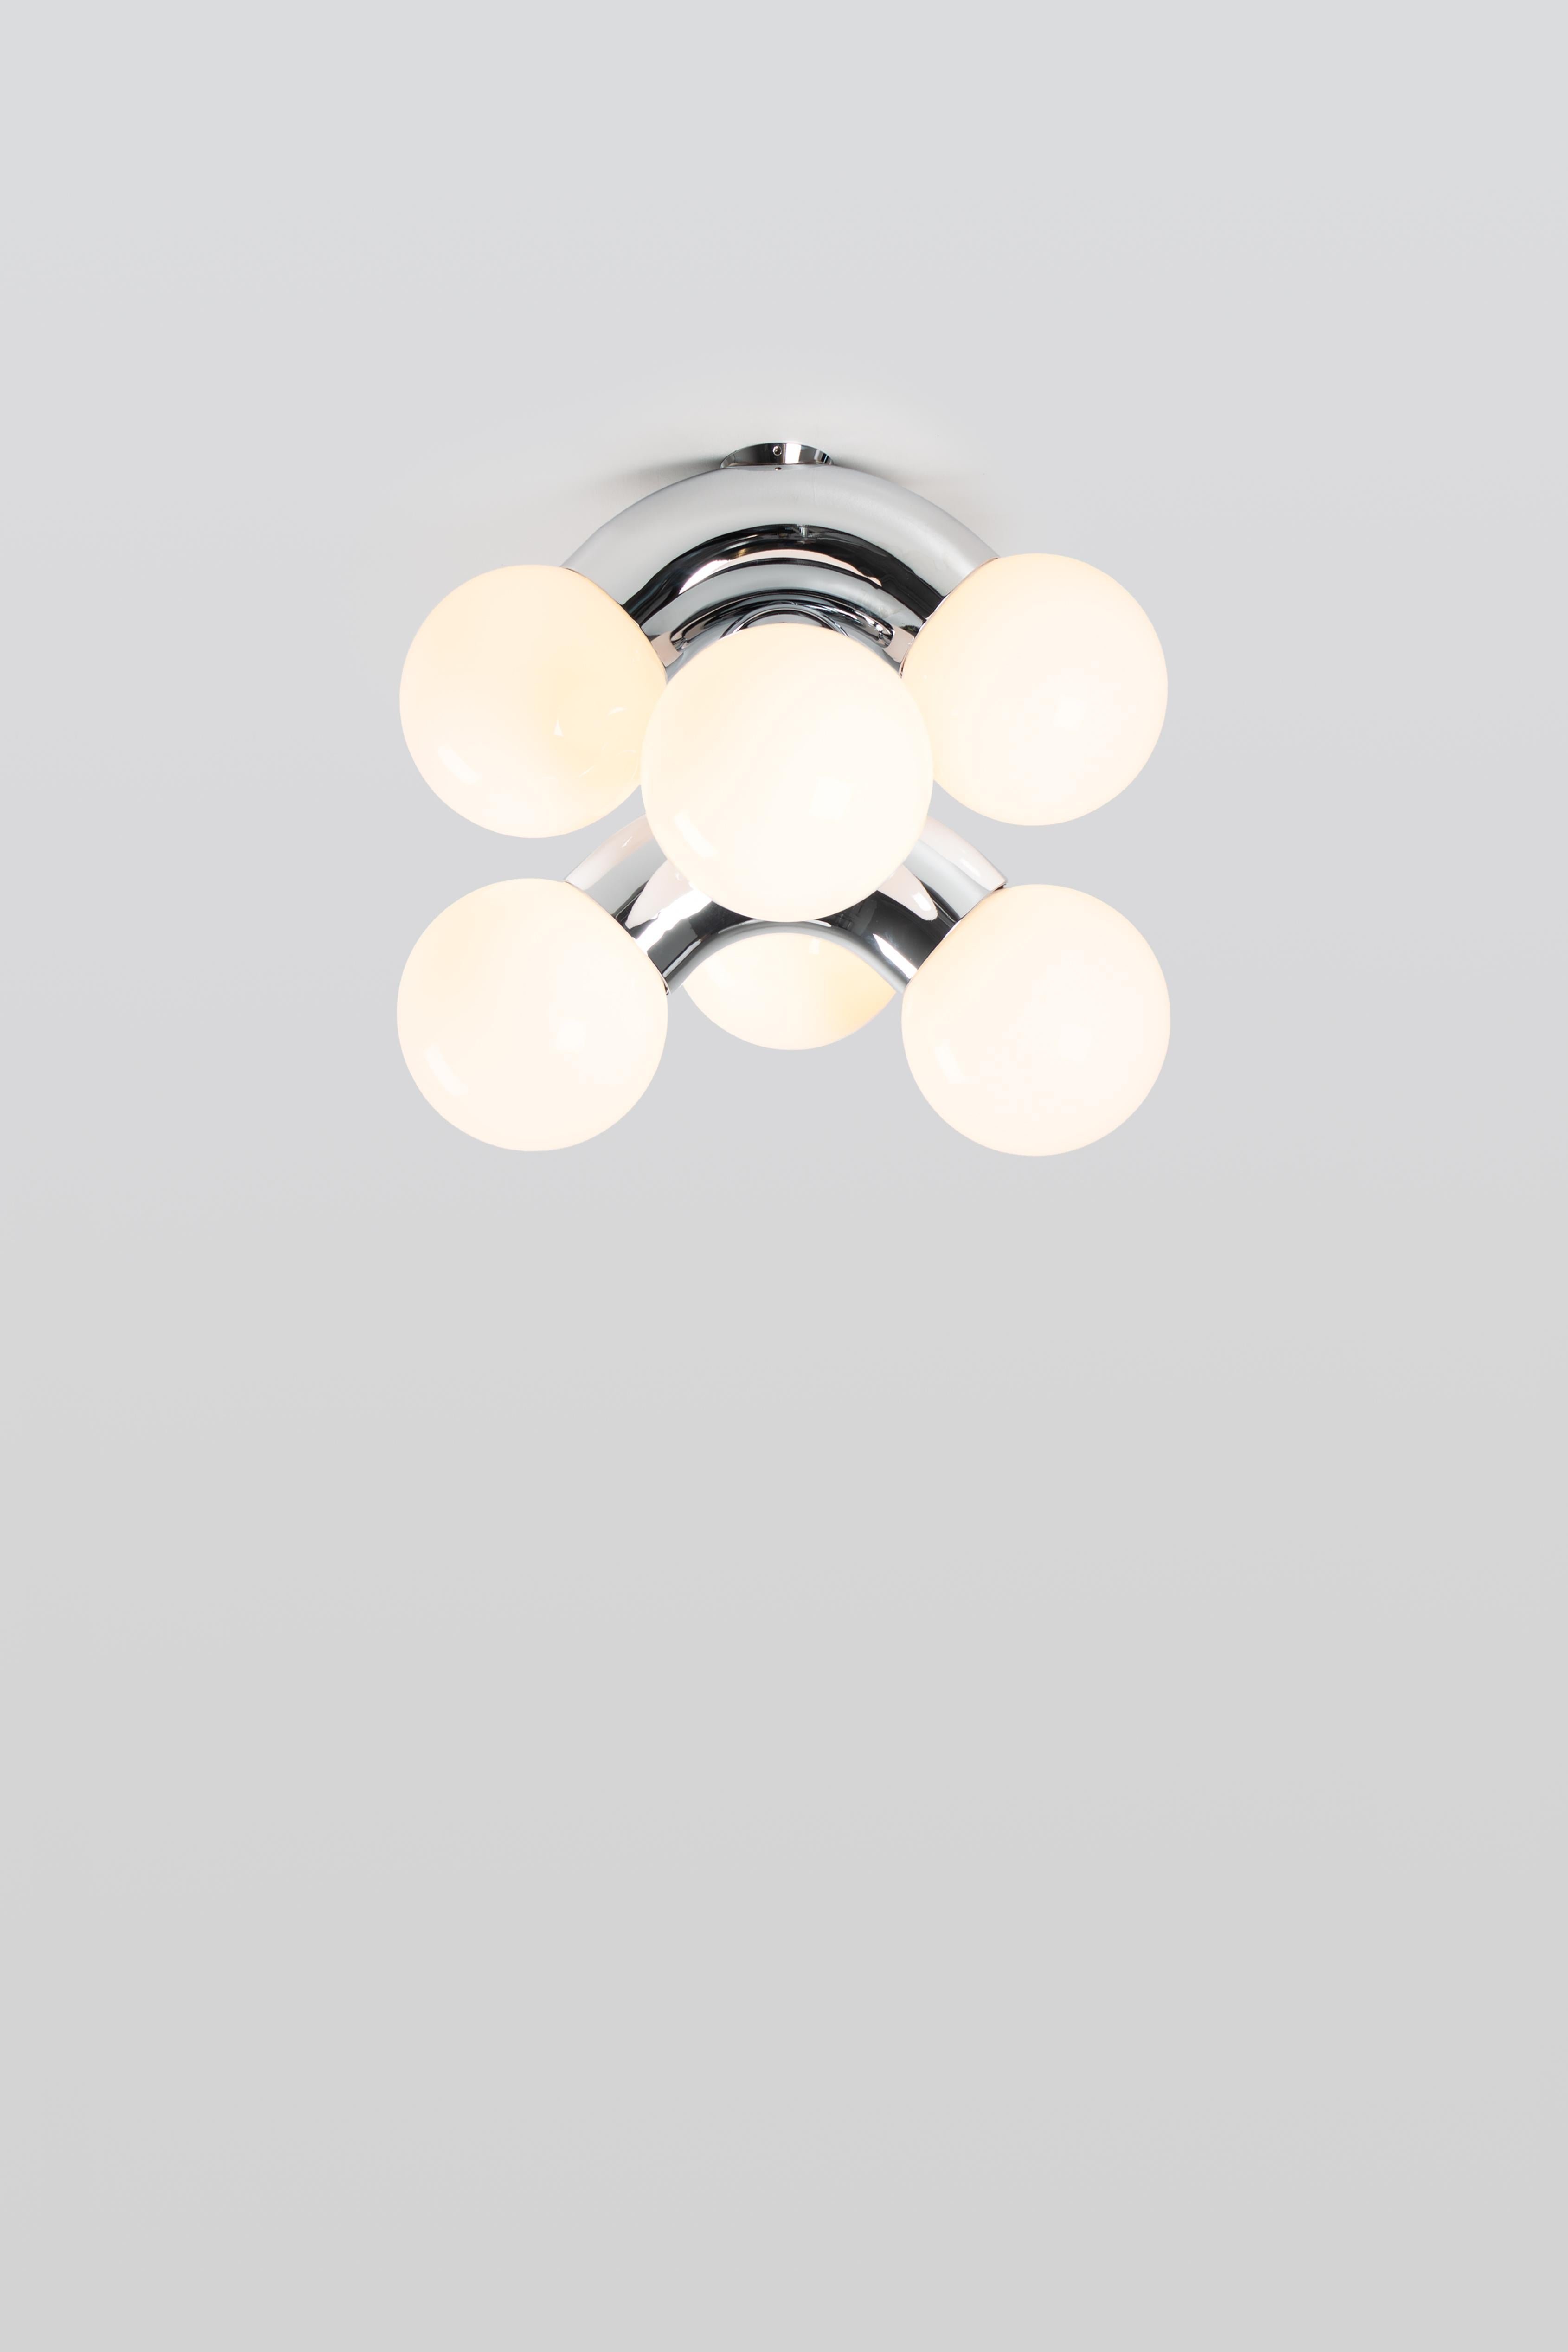 VINE 3-C, lampe de plafond
Conception : Caine Heintzman, éditeur : ANDLight

Le plafonnier Vigne combine une forme exagérée avec la propension à la répétition, ce qui donne un luminaire ambitieux à échelle verticale.

Matériaux
- Acier